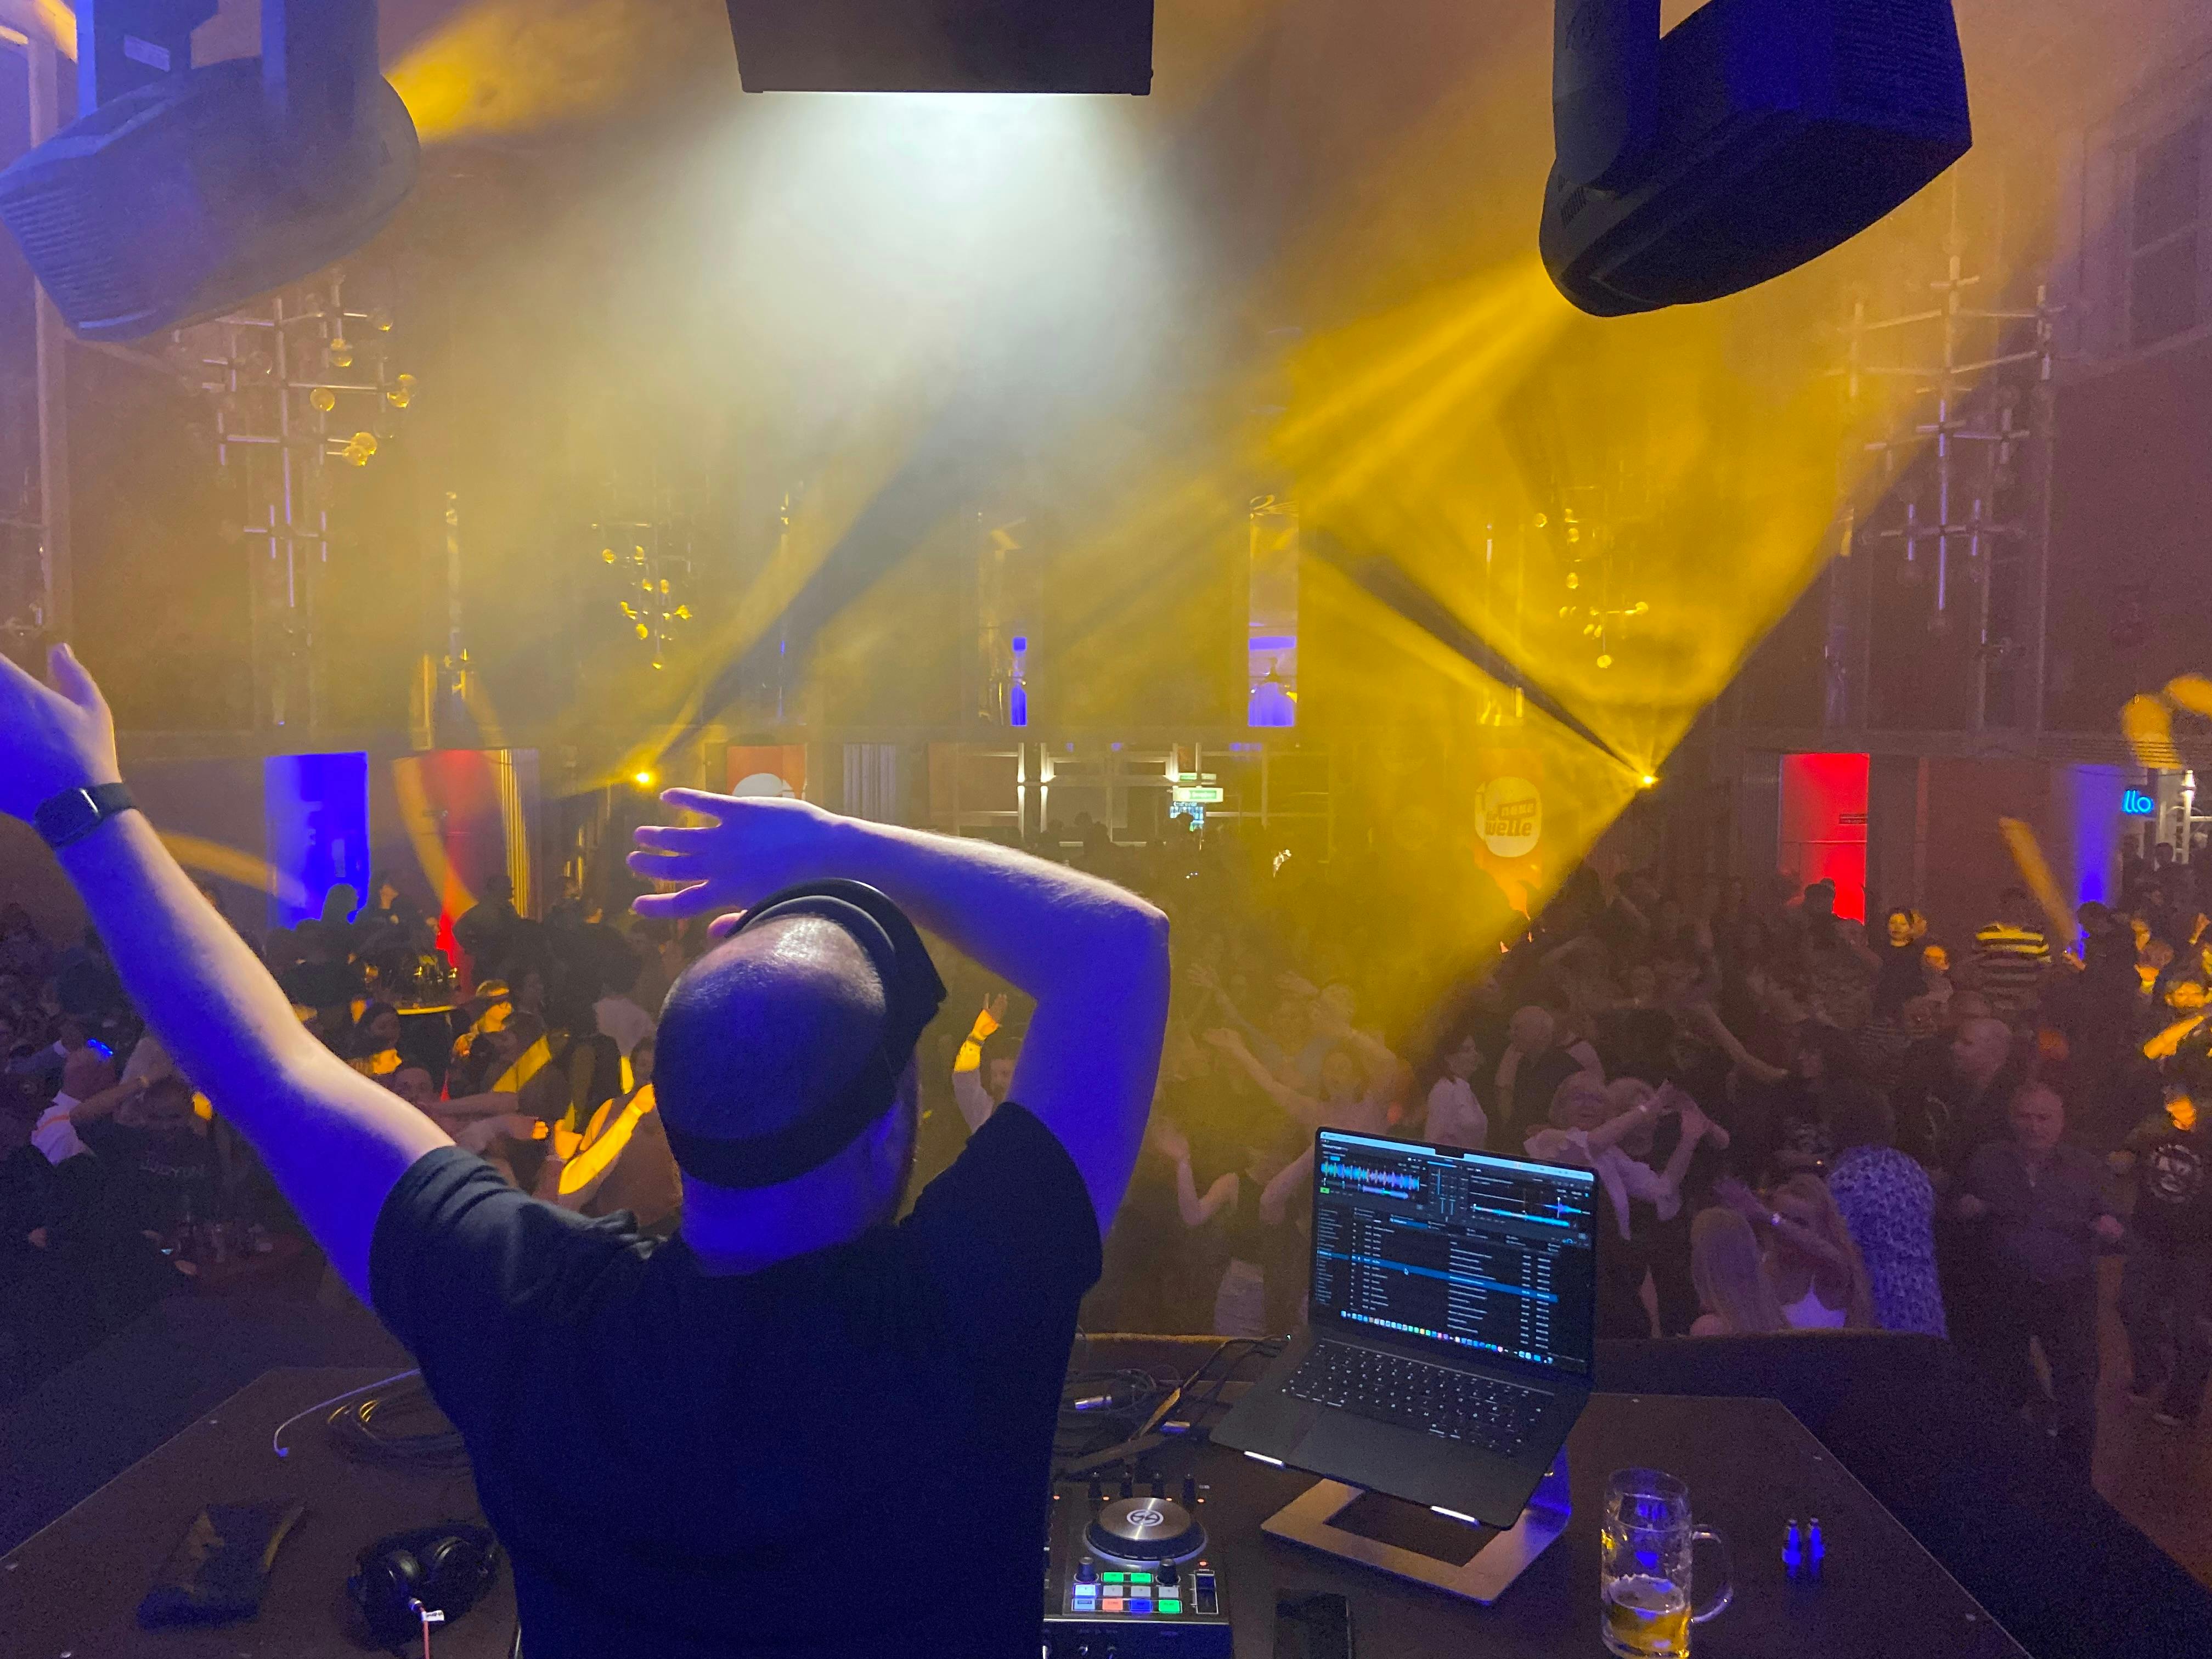 Über 450 Gäste aus allen Altersgruppen feierten und tanzten bis 2 Uhr morgens ausgelassen zu den Stimmungshits, die Neue-Welle-DJ Schüls aufgelegt hatte.